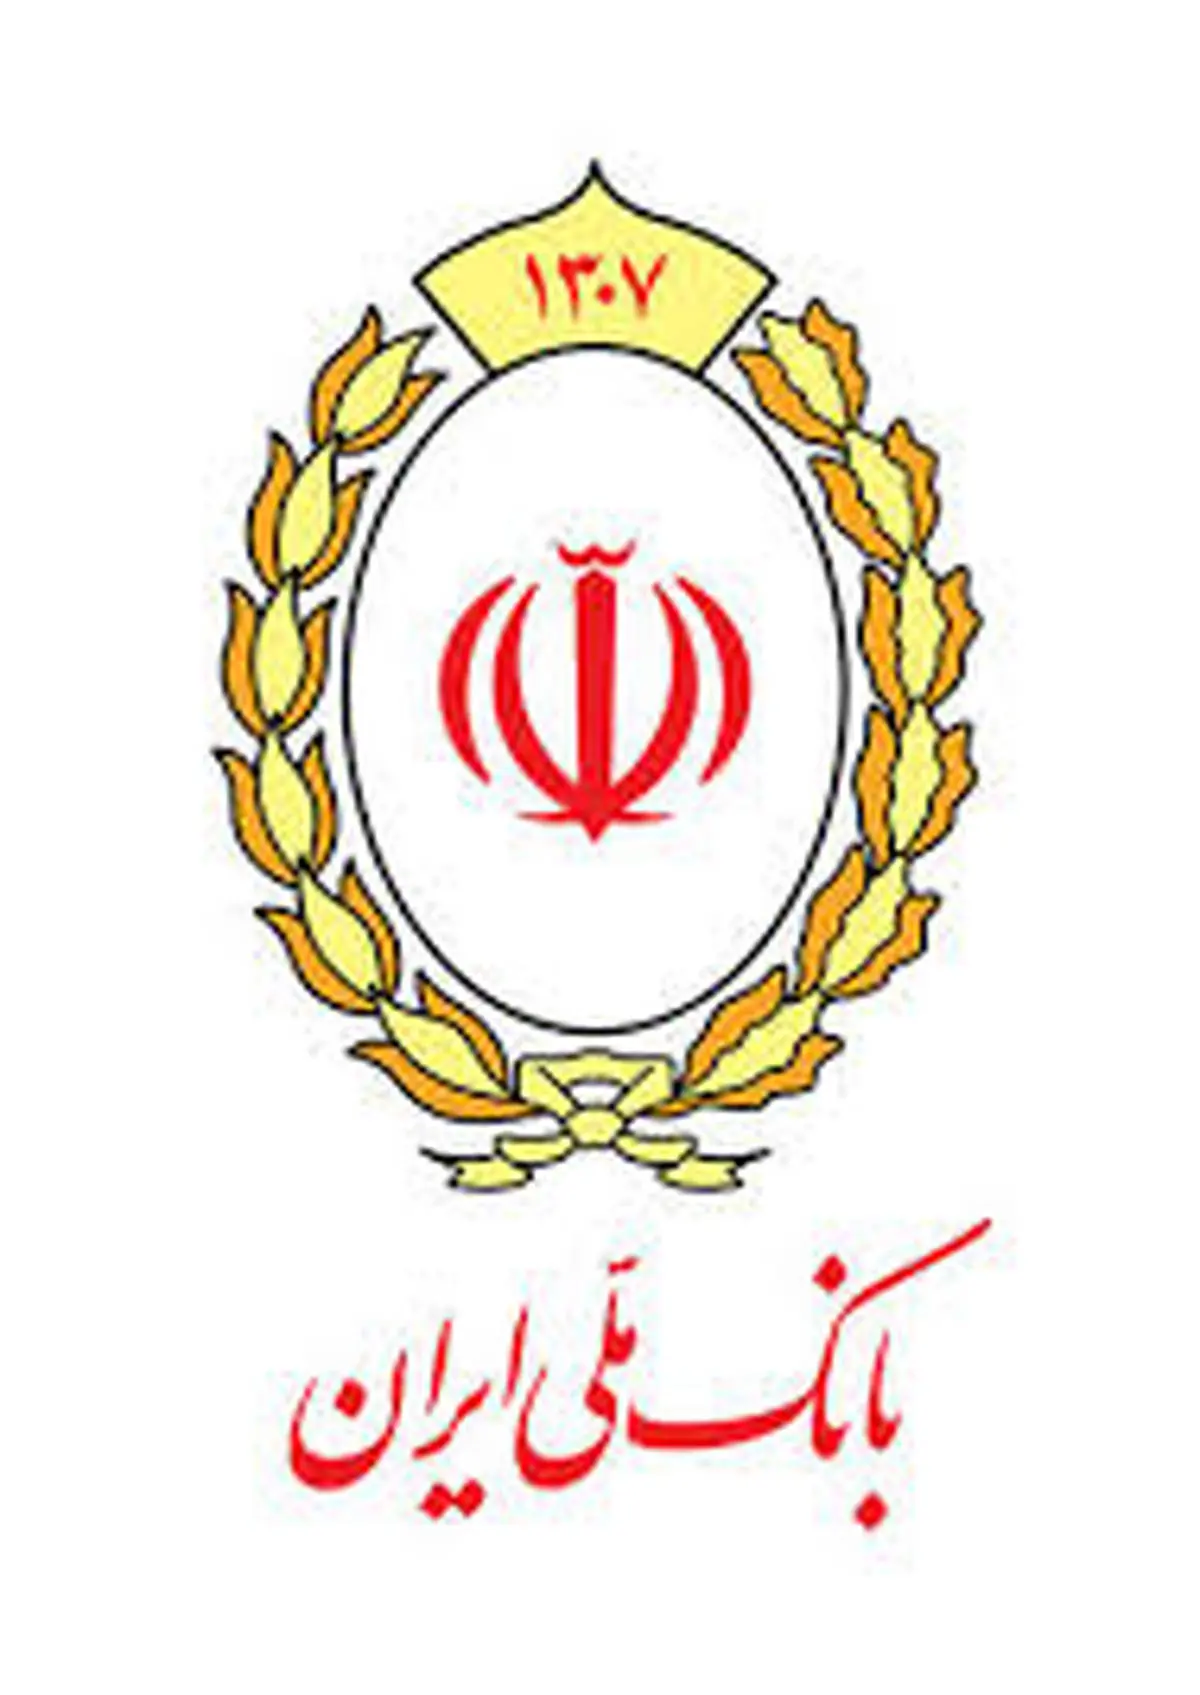 چشم امید تولیدکنندگان به بانک ملی ایران

